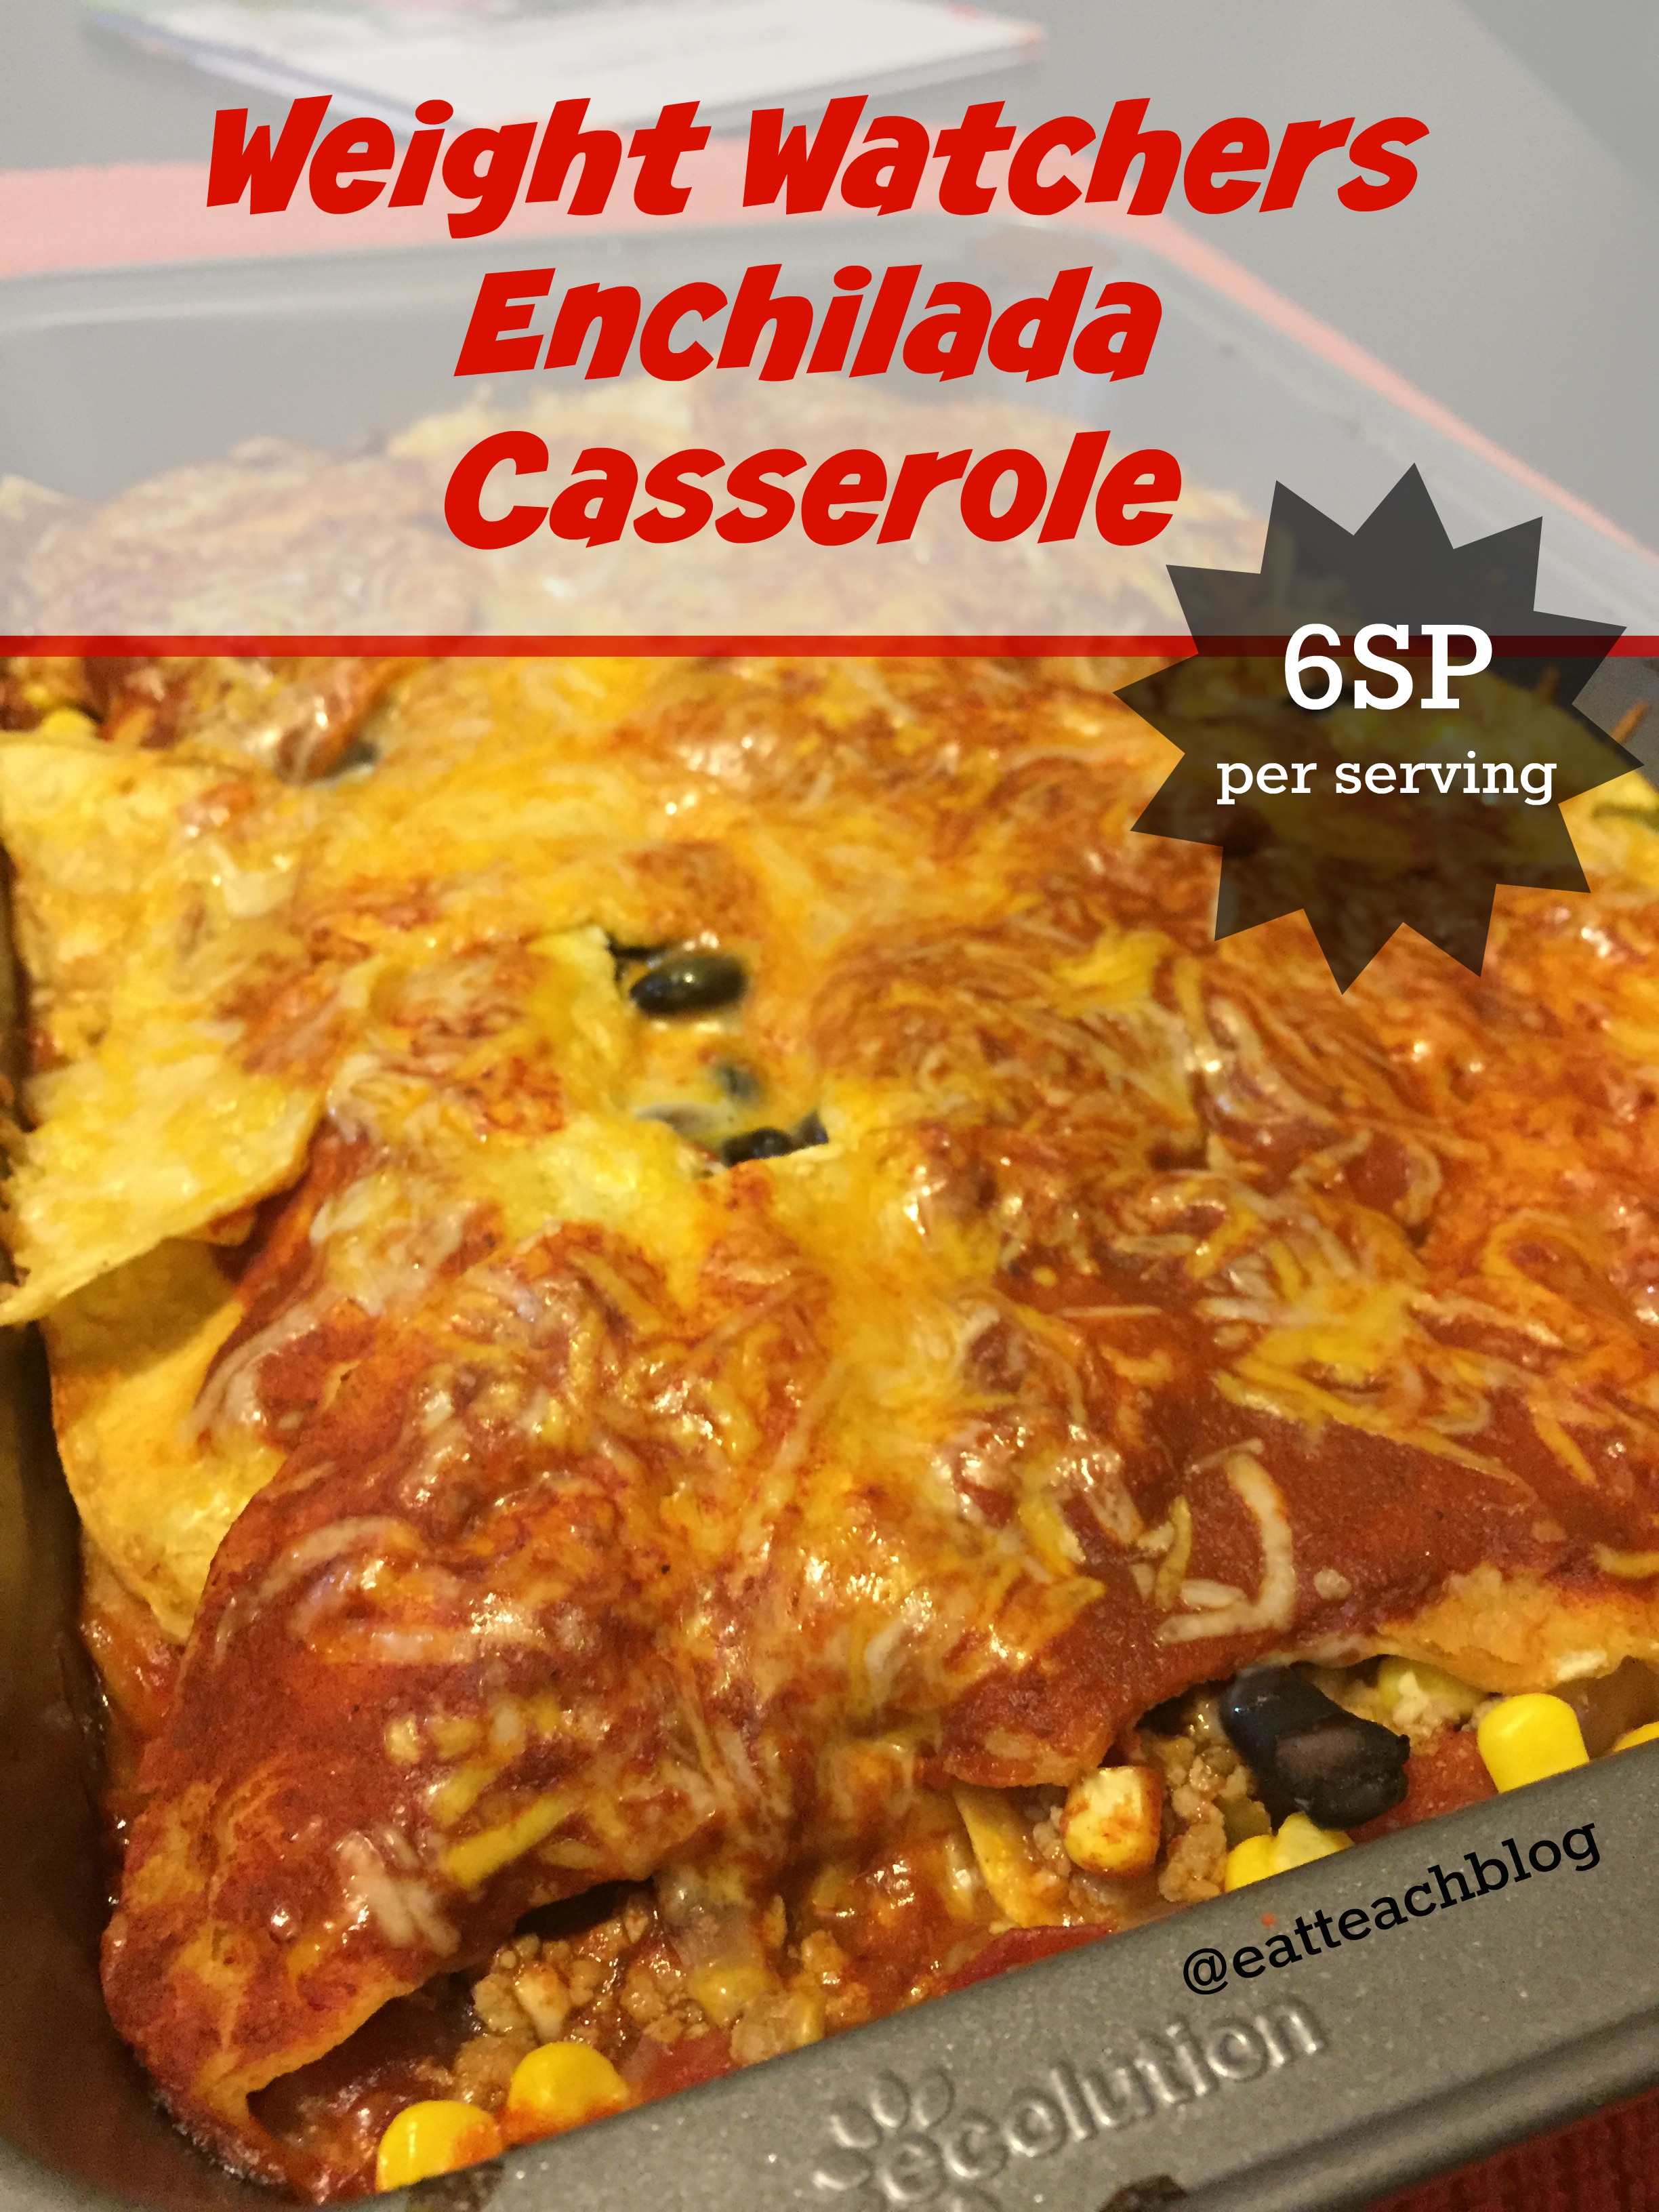 The Best Weight Watcher Enchiladas – Best Round Up Recipe Collections